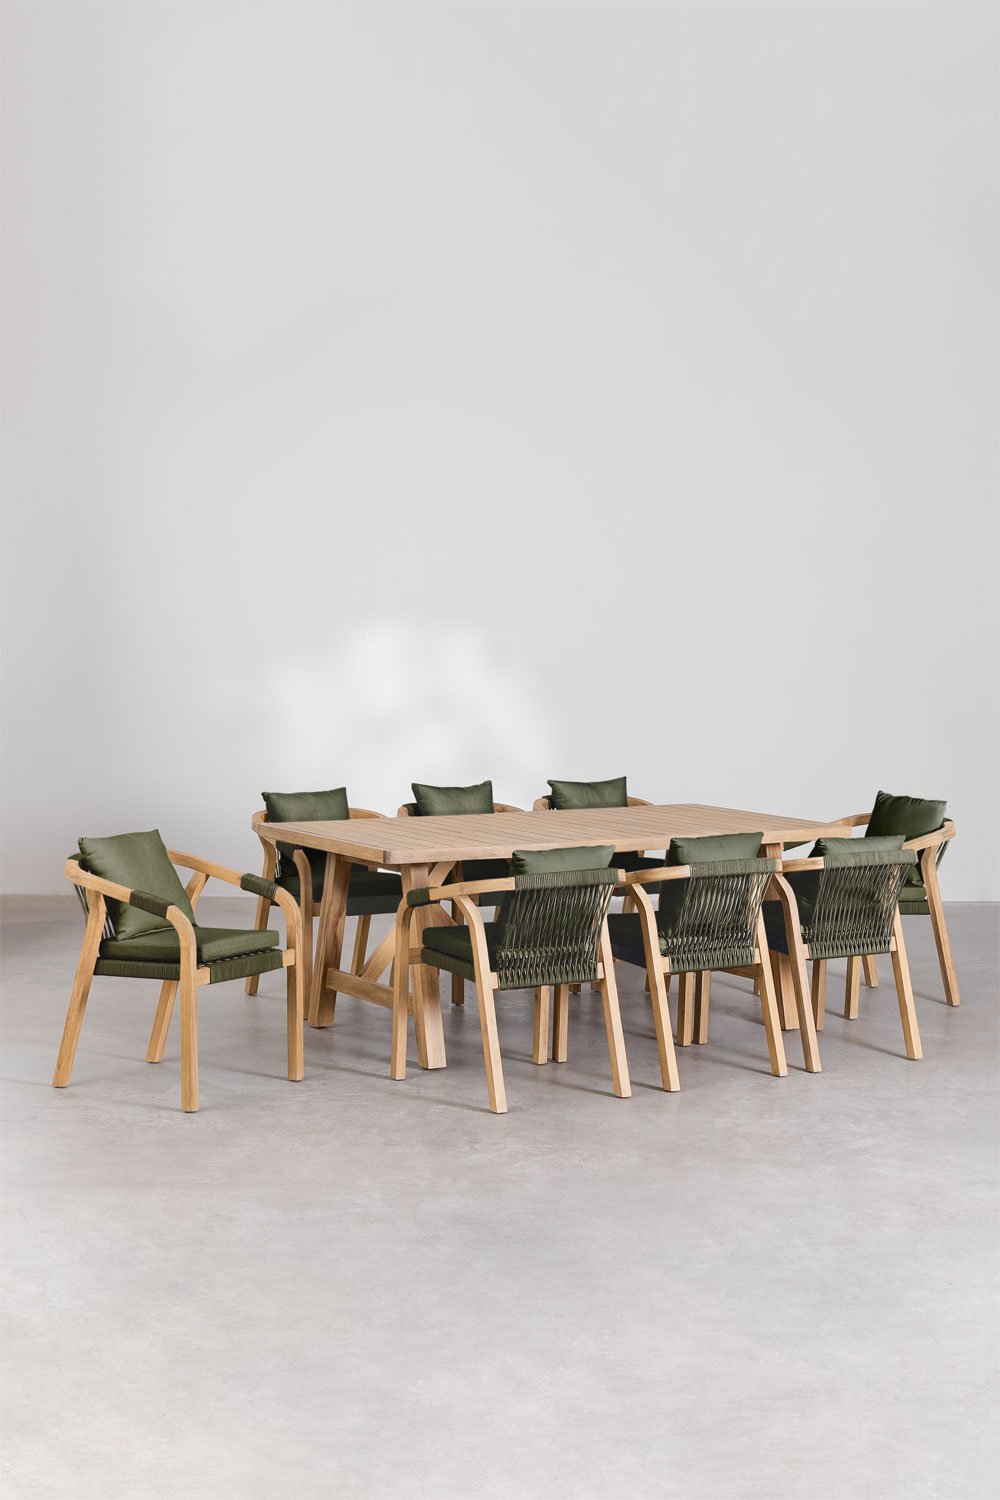 Set di Tavolo Rettangolare (200x100 cm) e 8 Sedie da Pranzo in Legno di Acacia Dubai, immagine della galleria 1